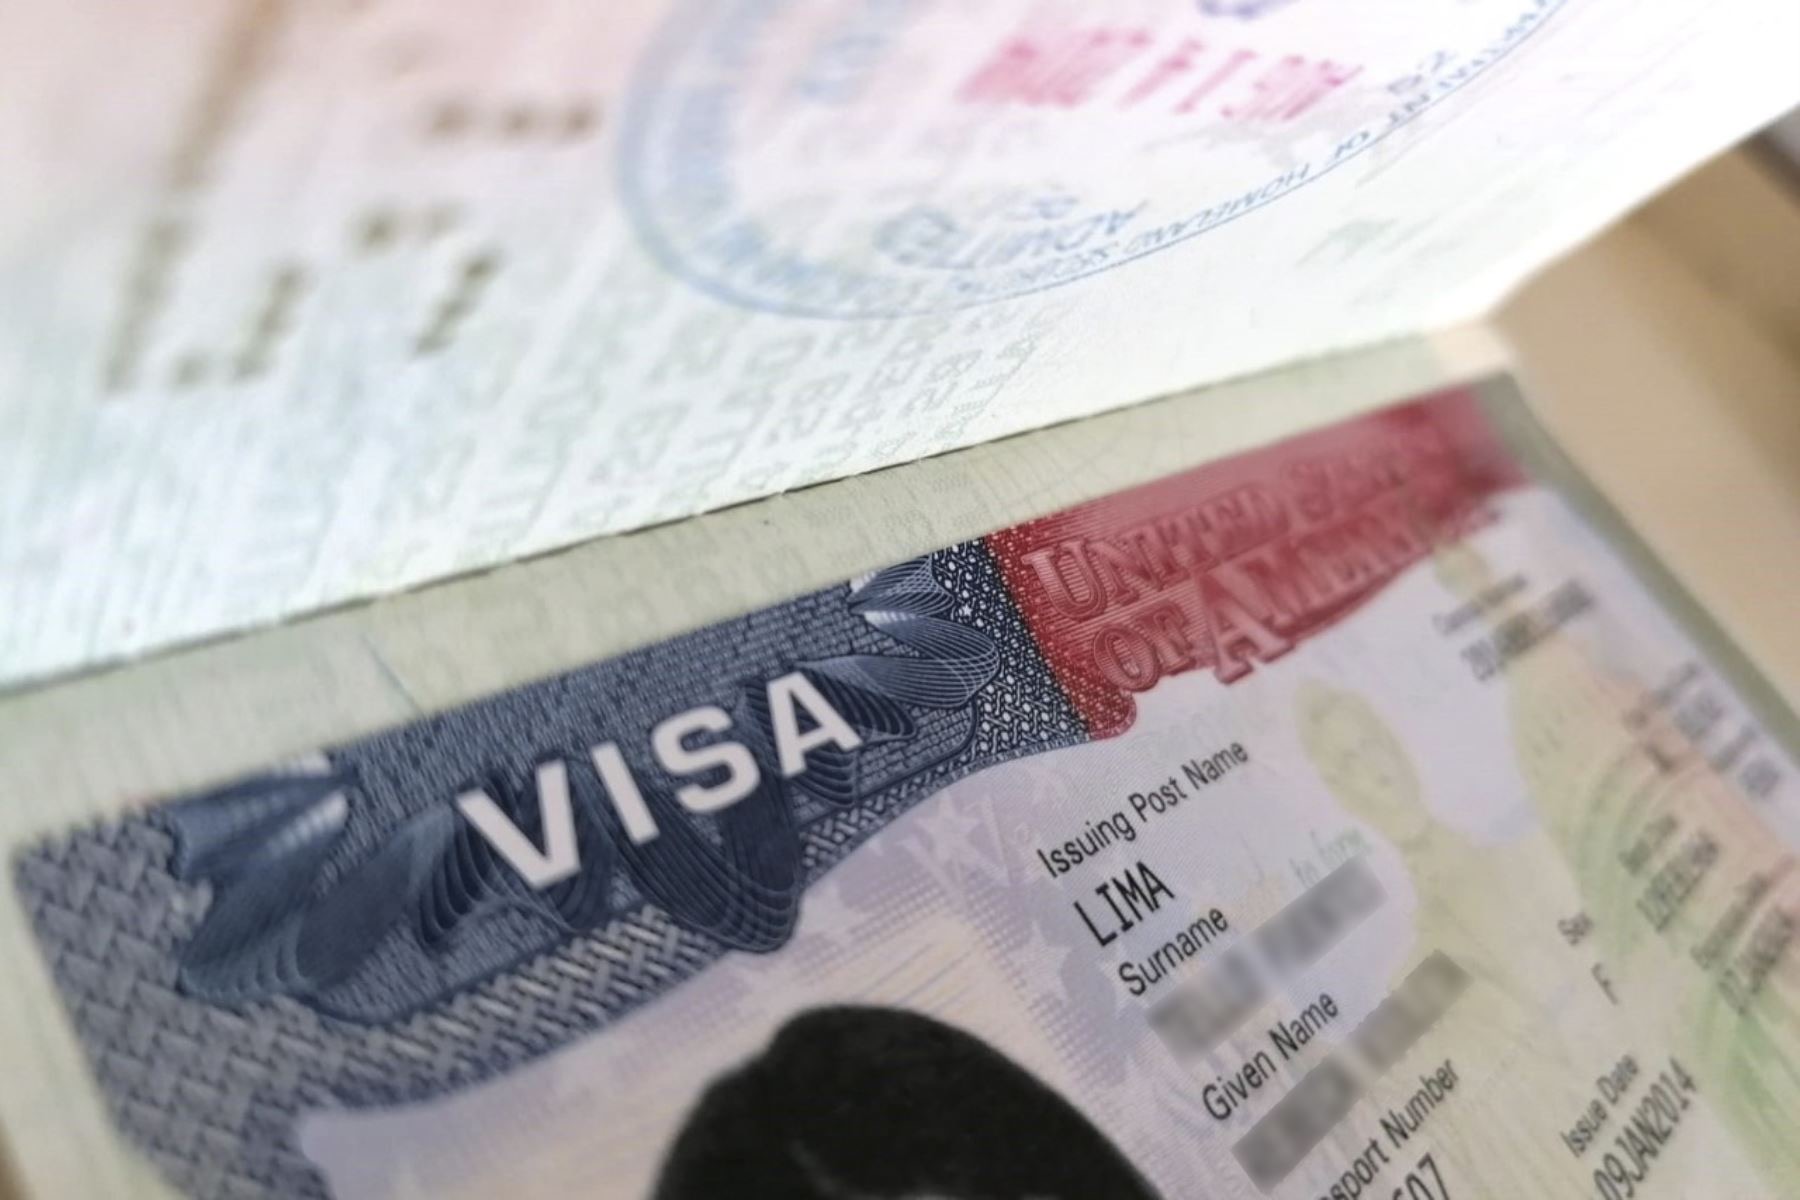 La aprobación de la solicitud oscila entre cinco y ocho meses; el consulado puede tardar cuatro meses más para aprobar o rechazar la visa.